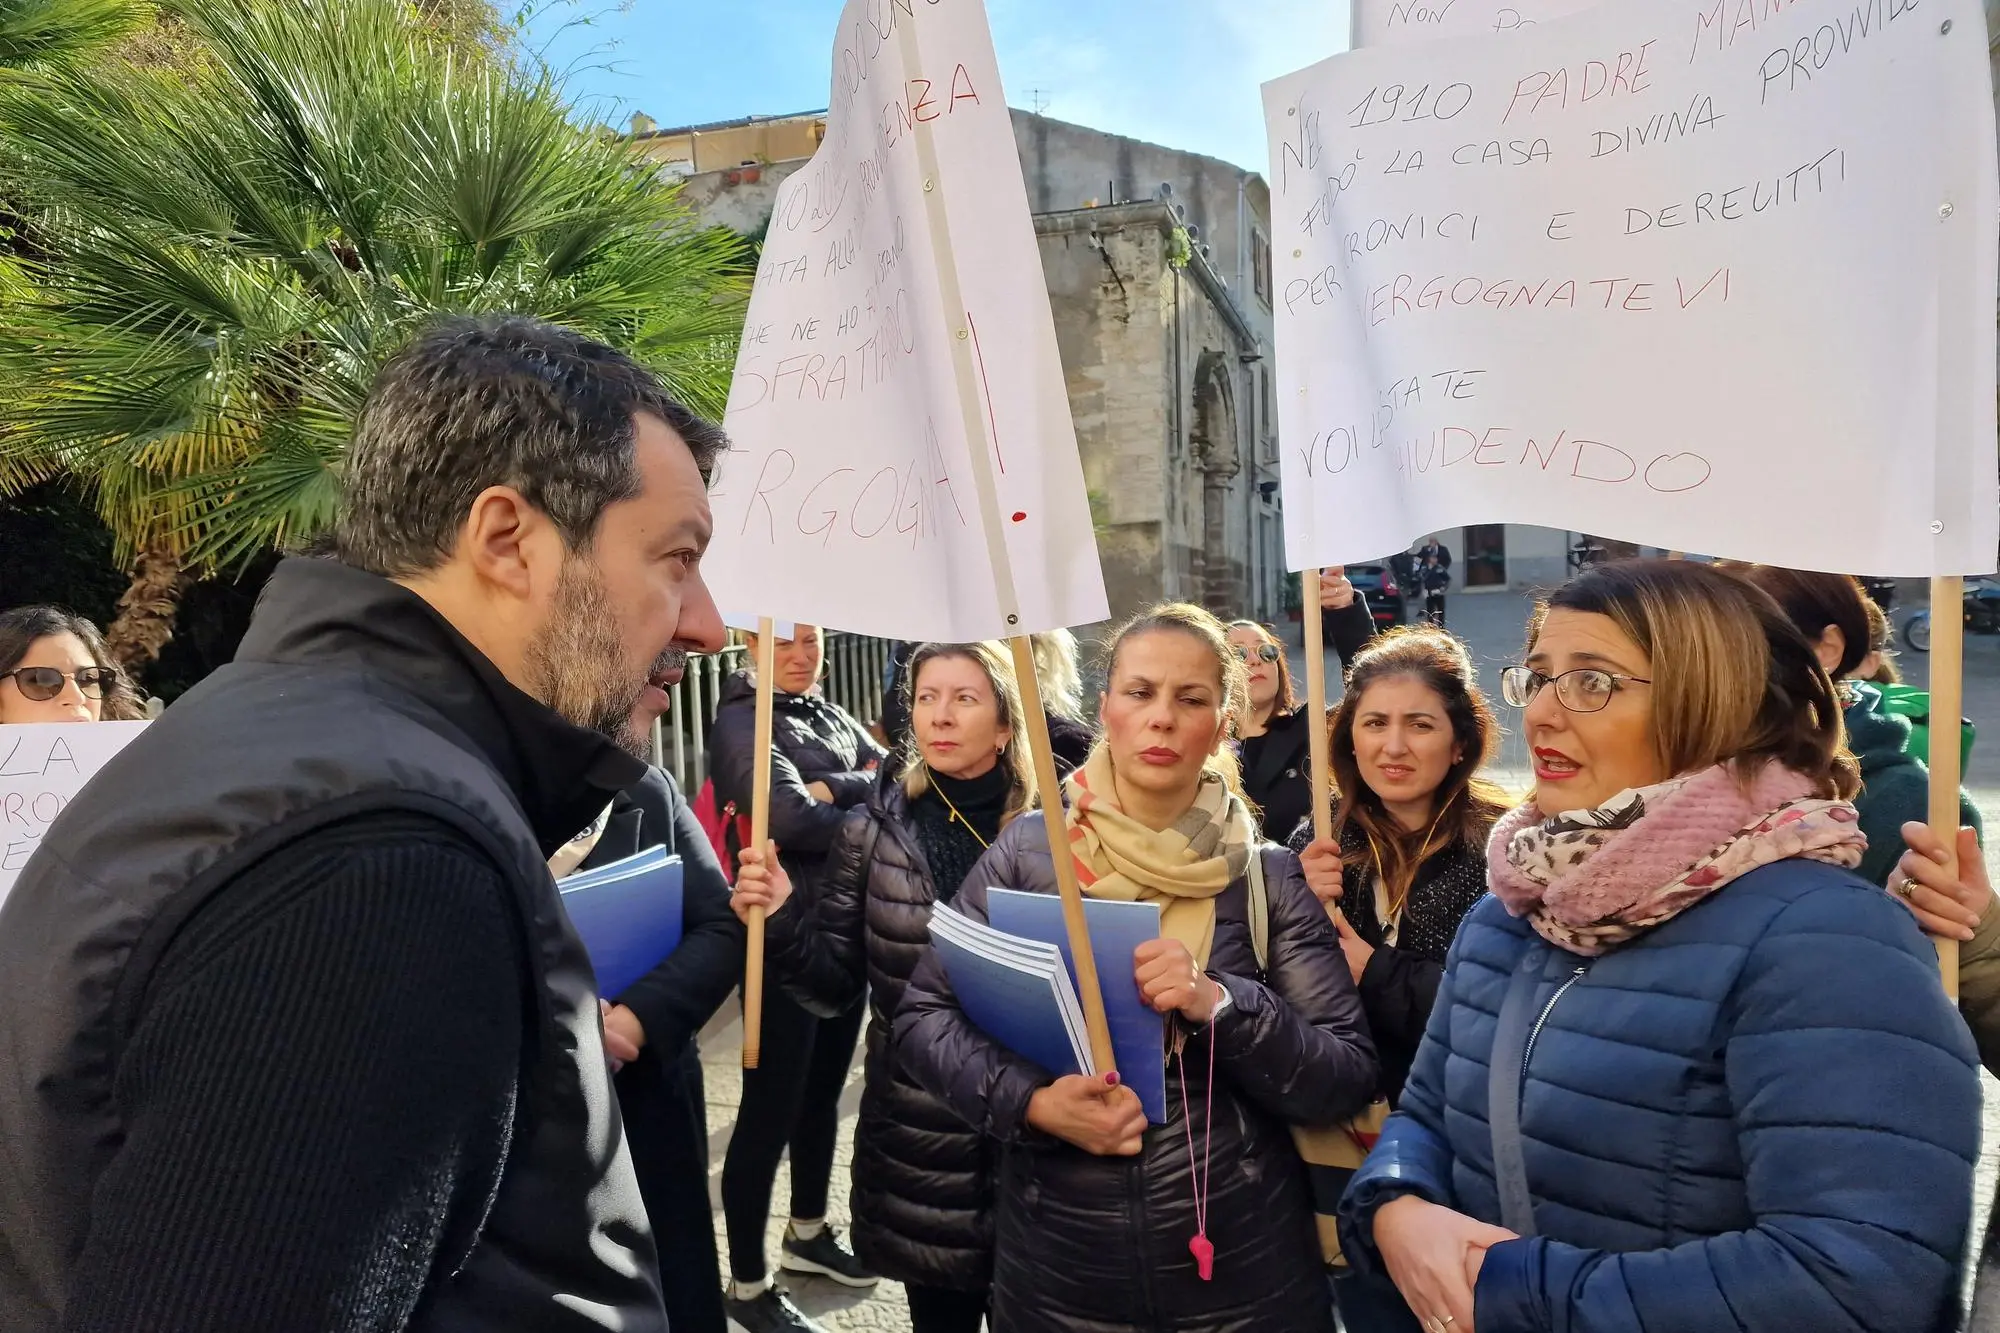 L'incontro di Salvini con le lavoratrici (Floris)